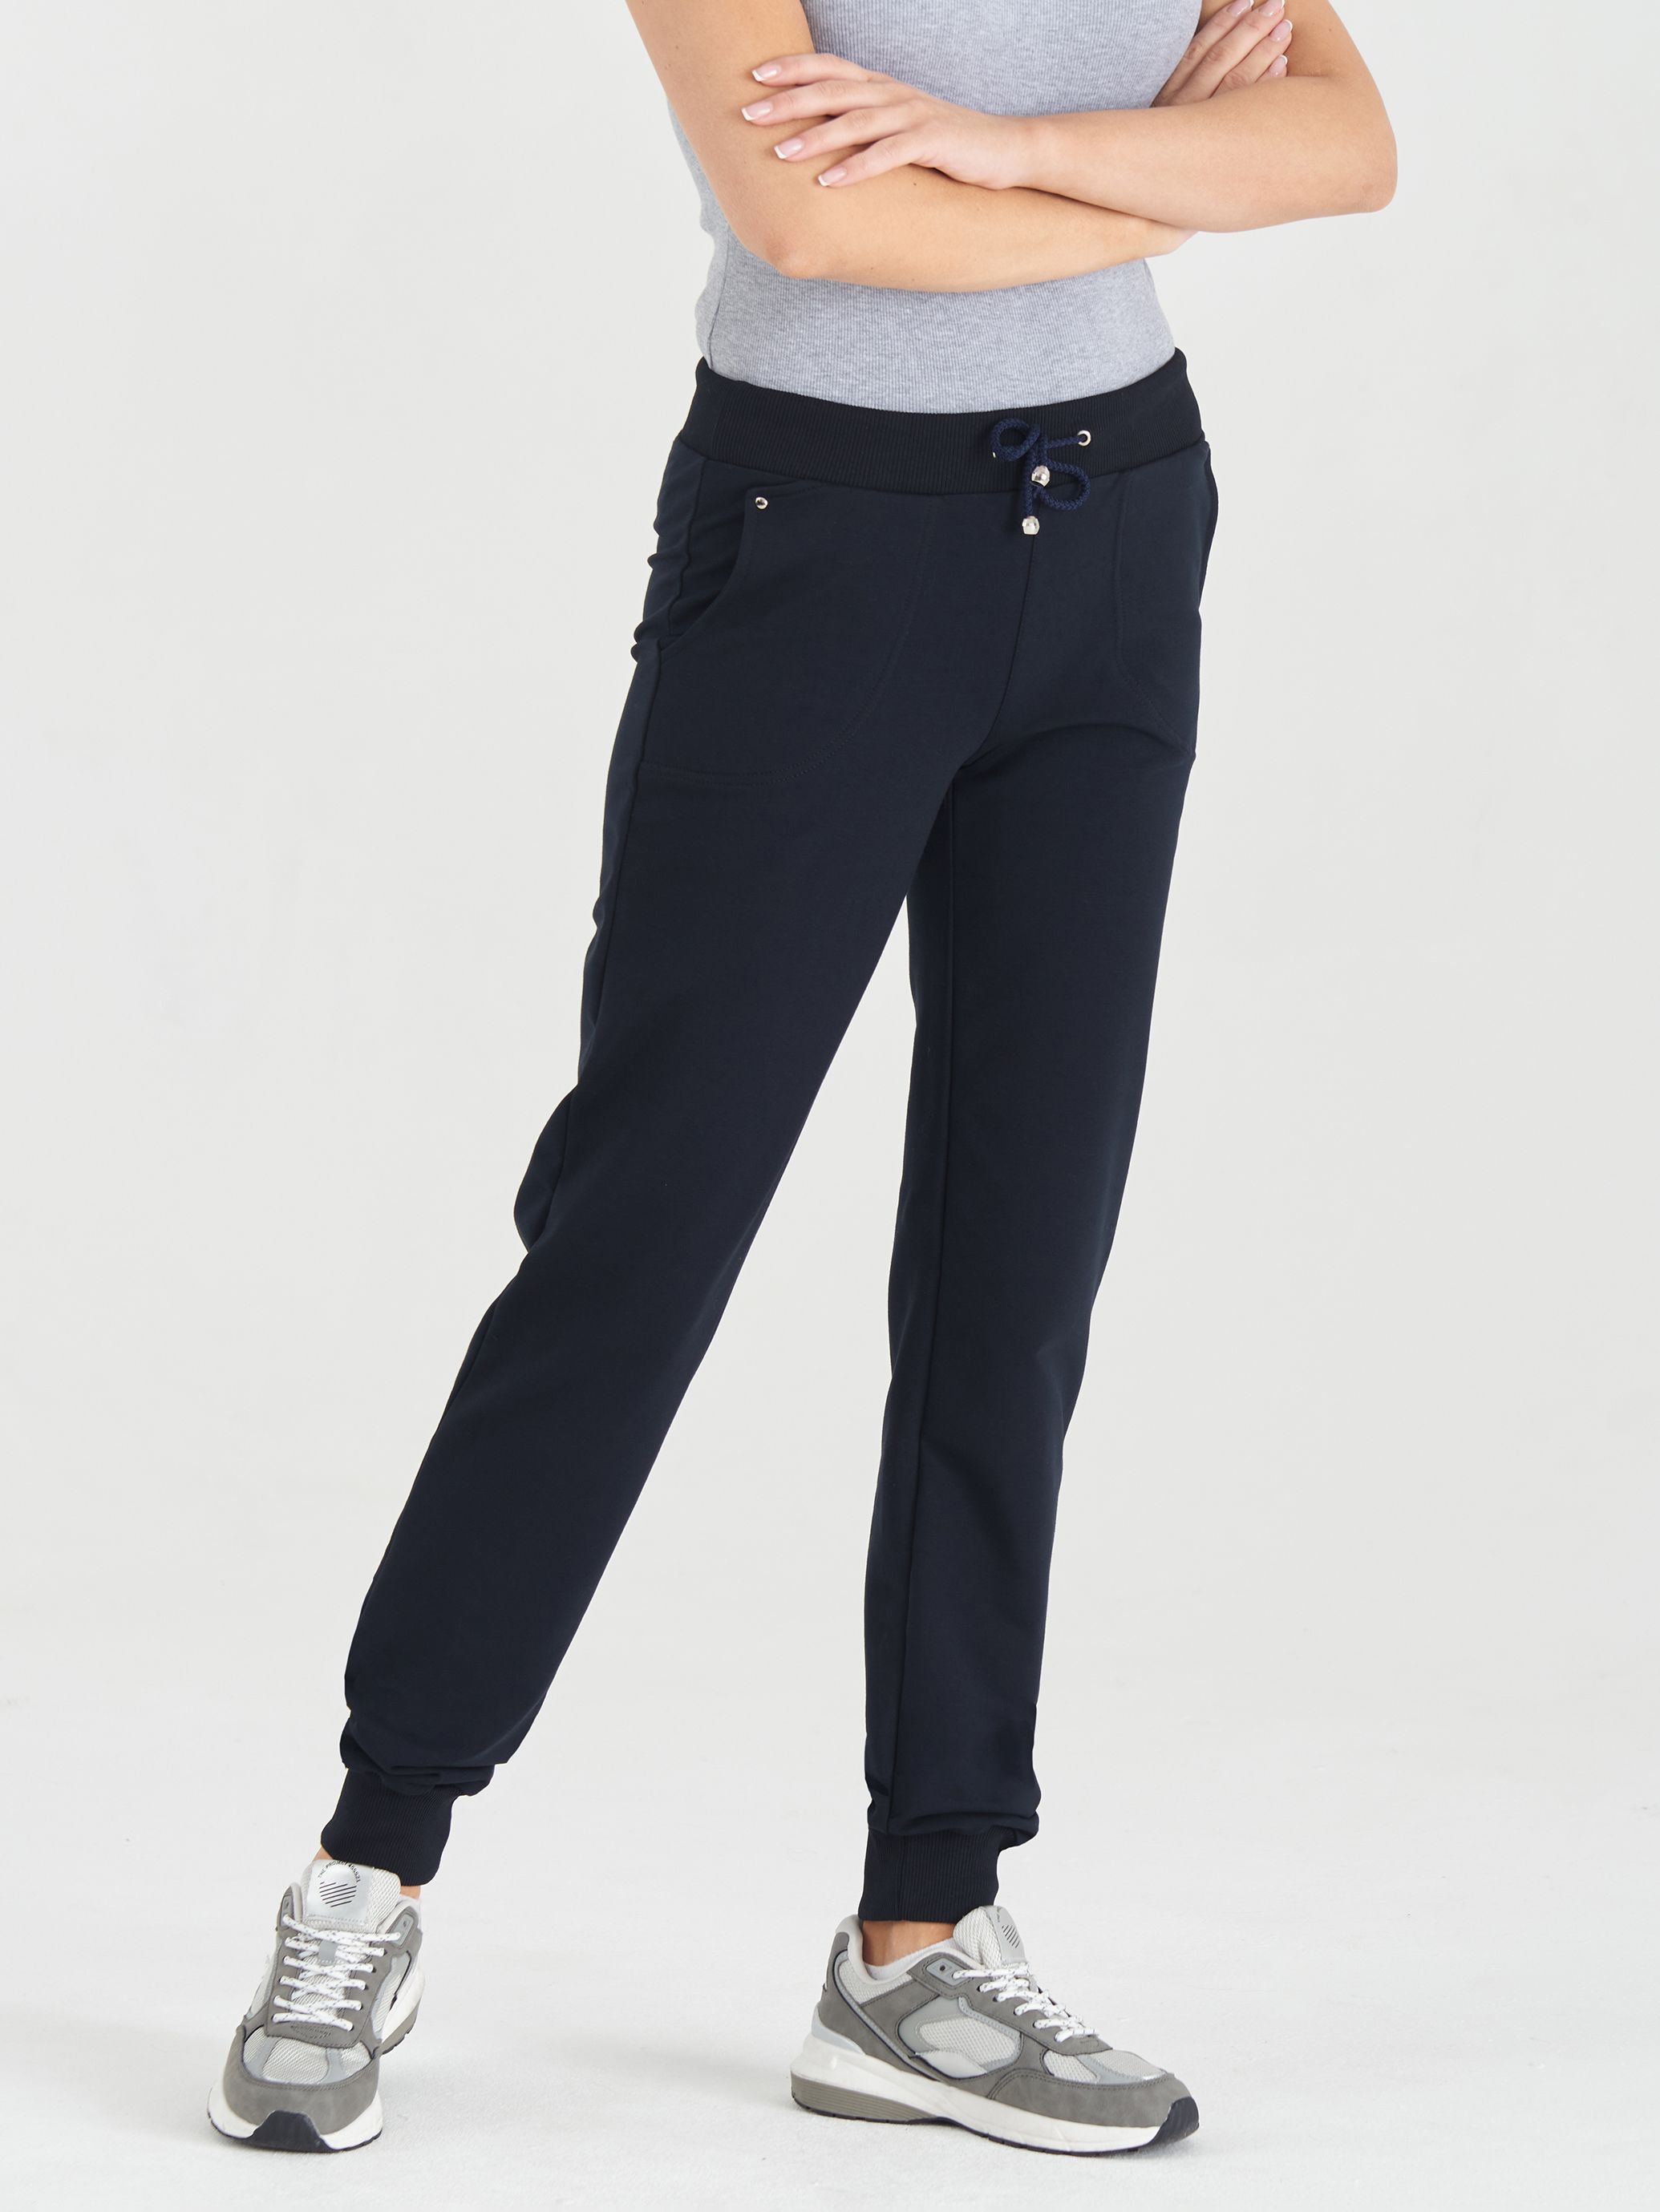 Спортивные брюки женские LAINA LAINA-708 синие 44 RU